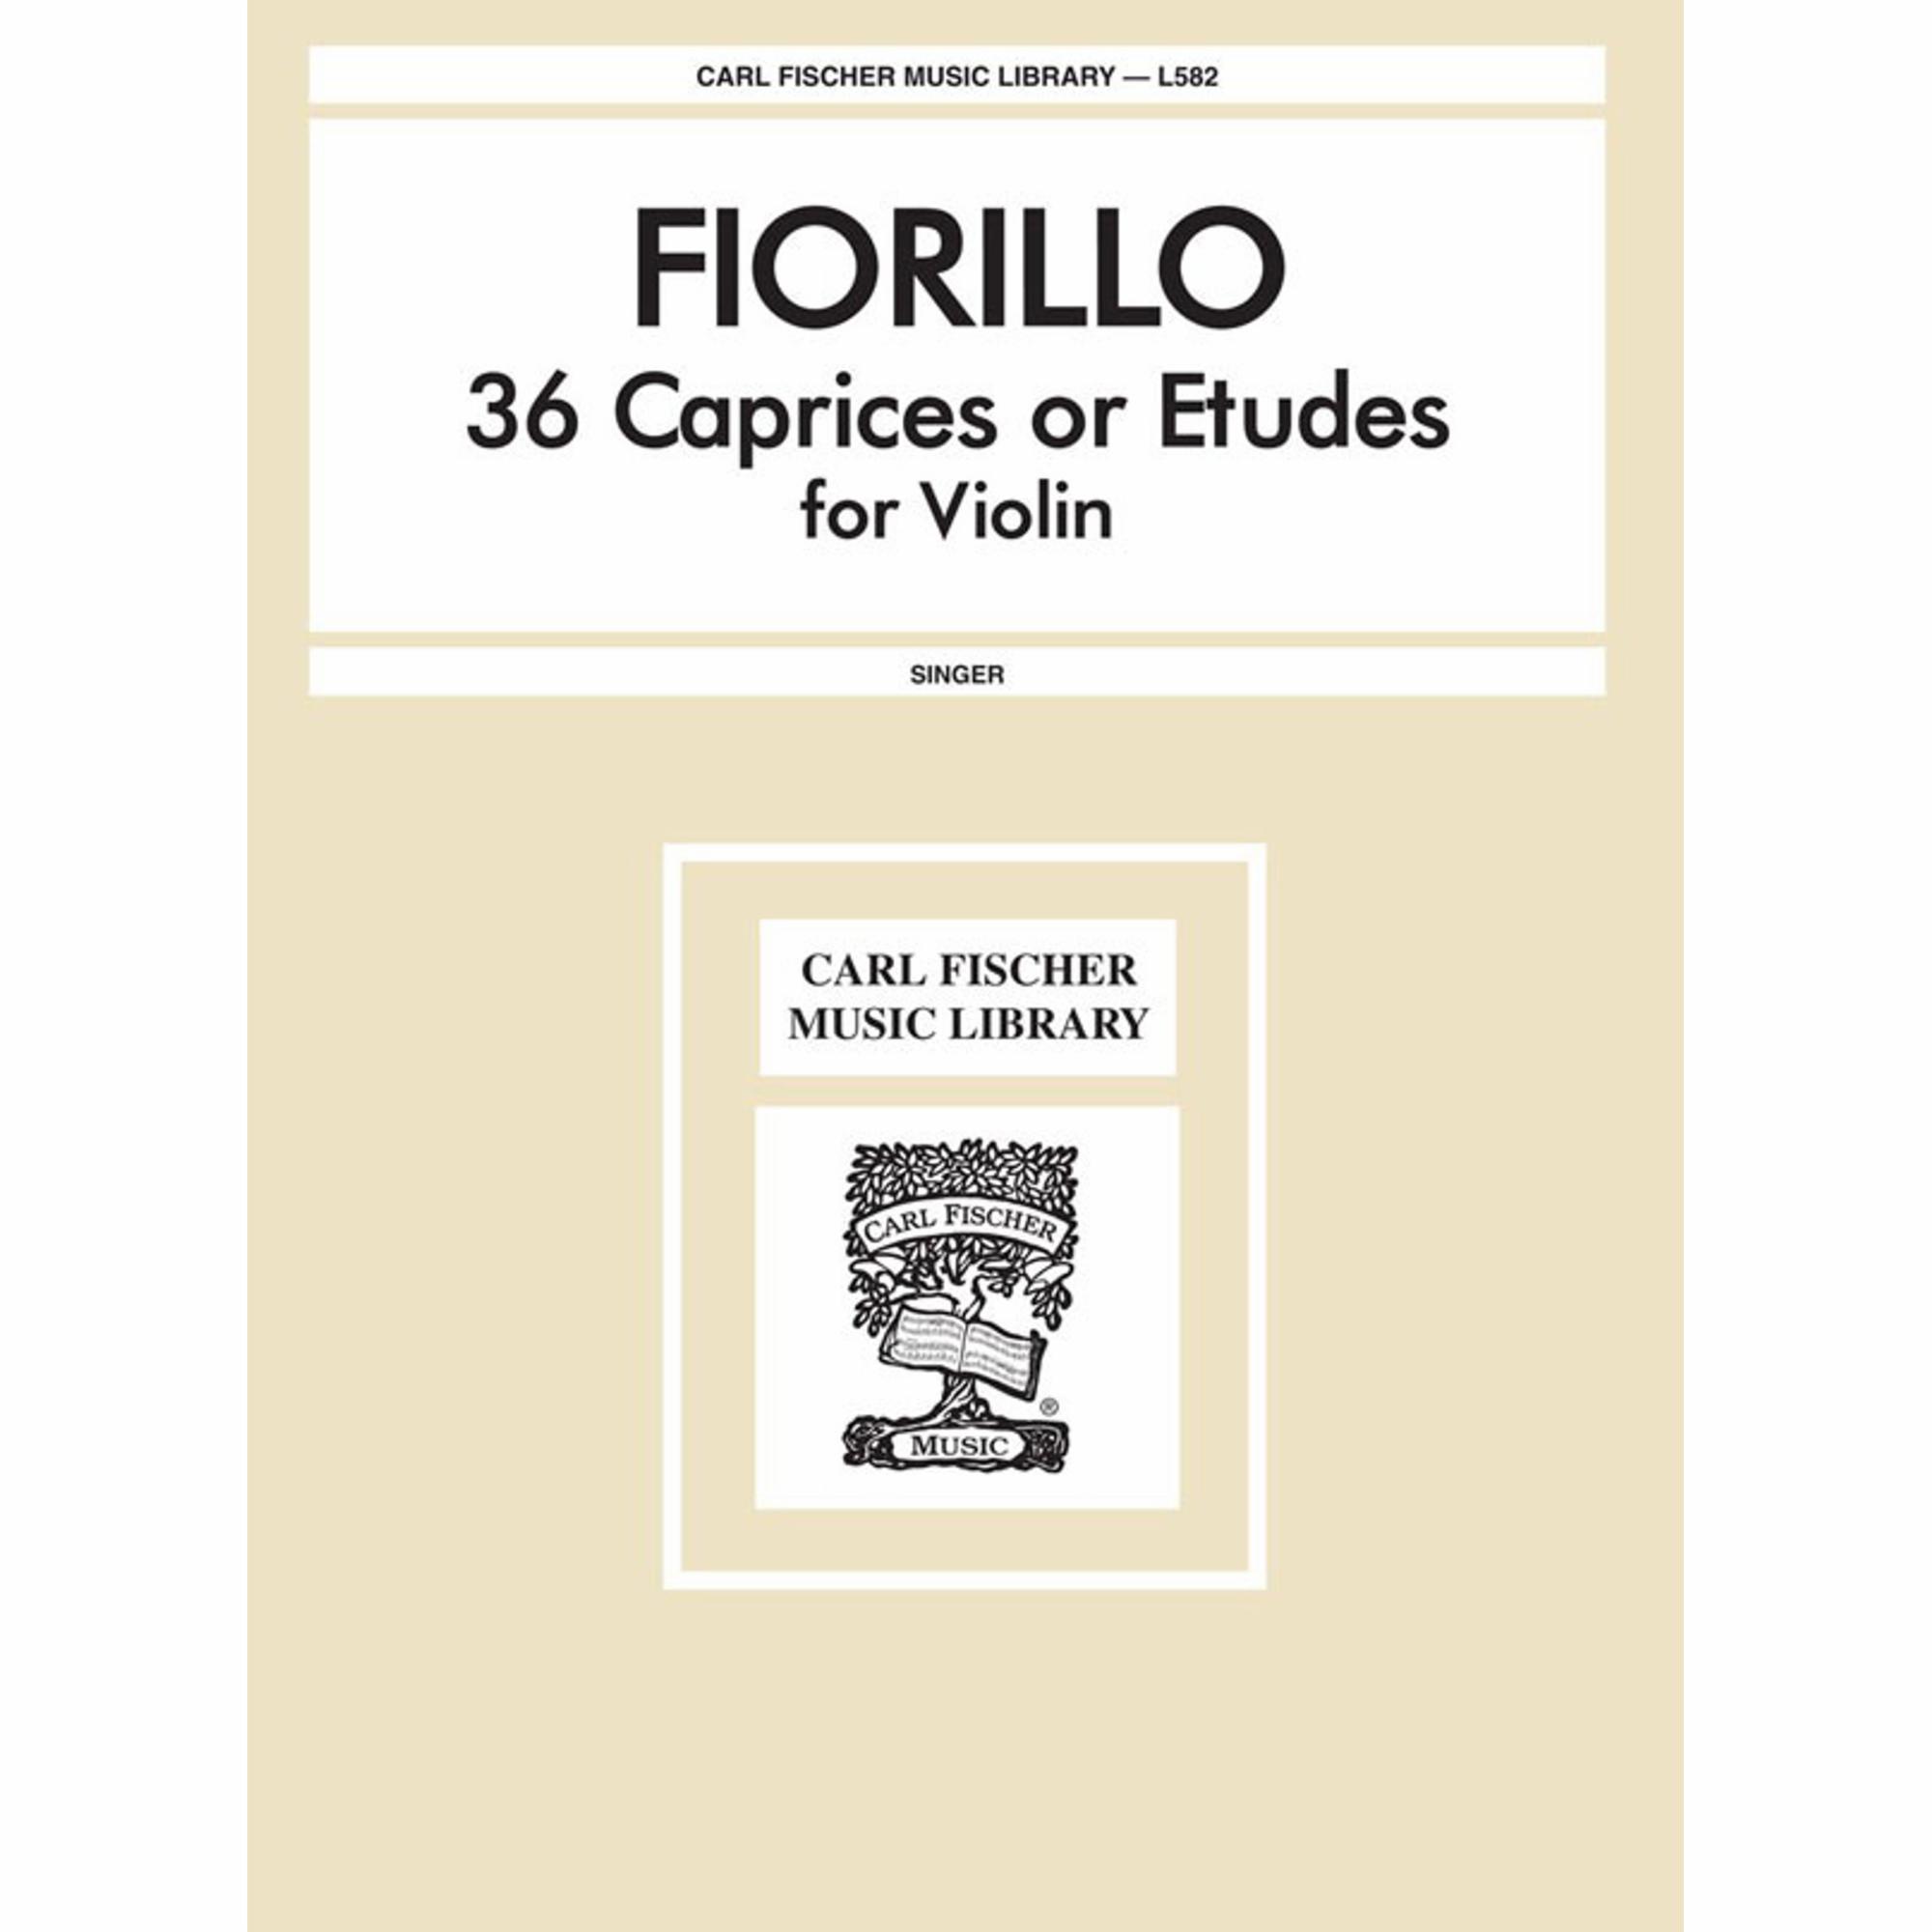 Fiorillo -- 36 Caprices or Etudes for Violin